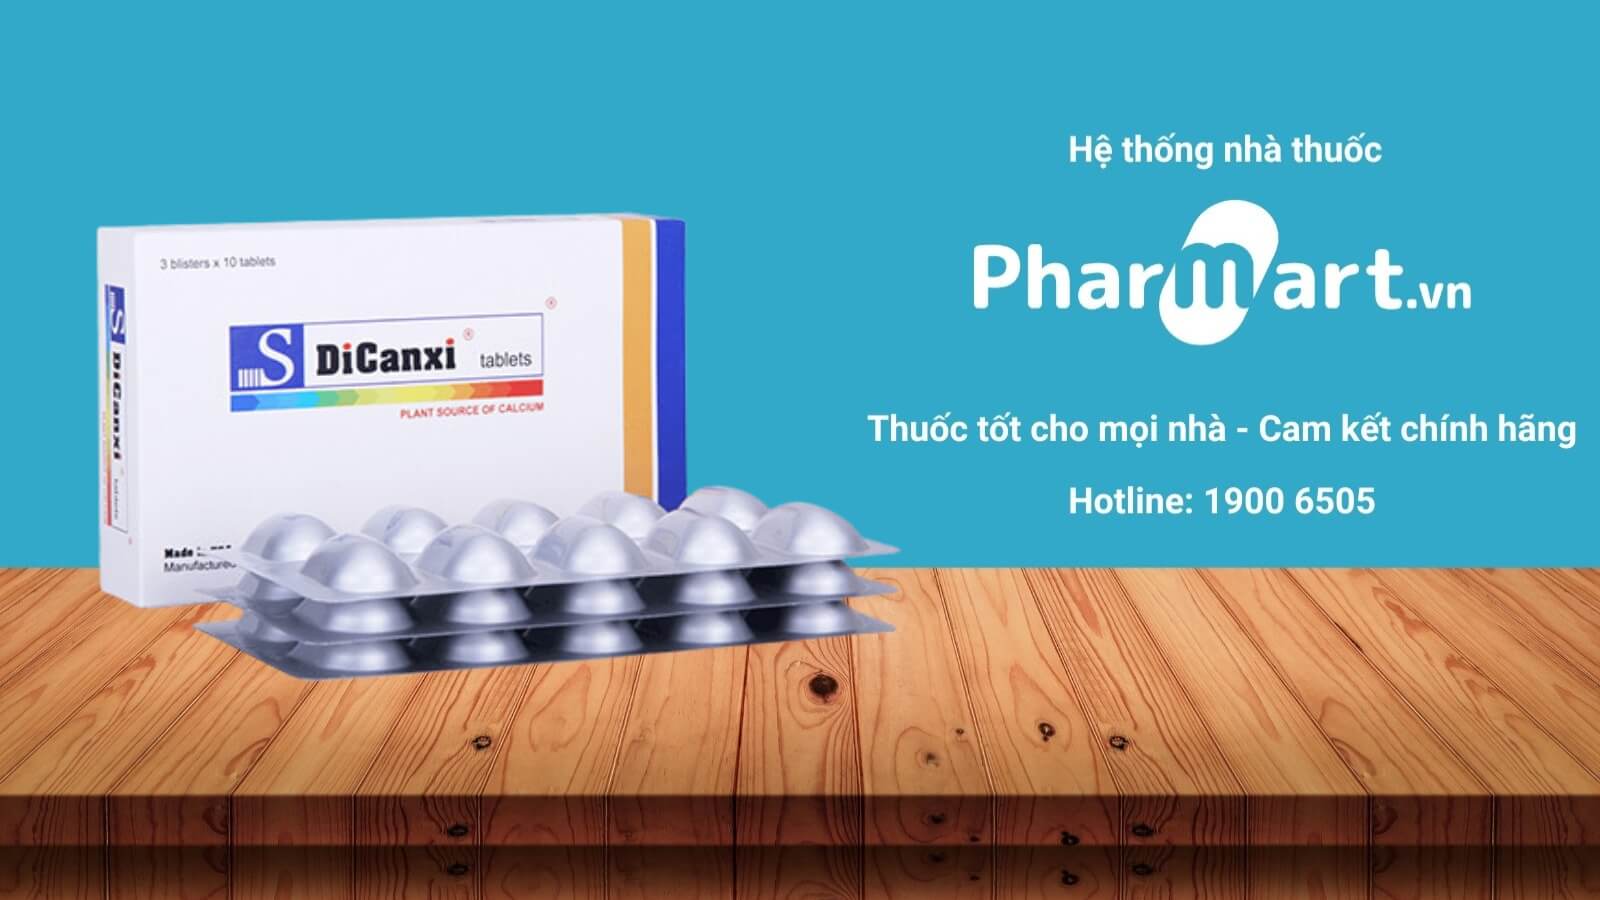 Mua ngay S DiCanxi chính hãng tại Pharmart.vn